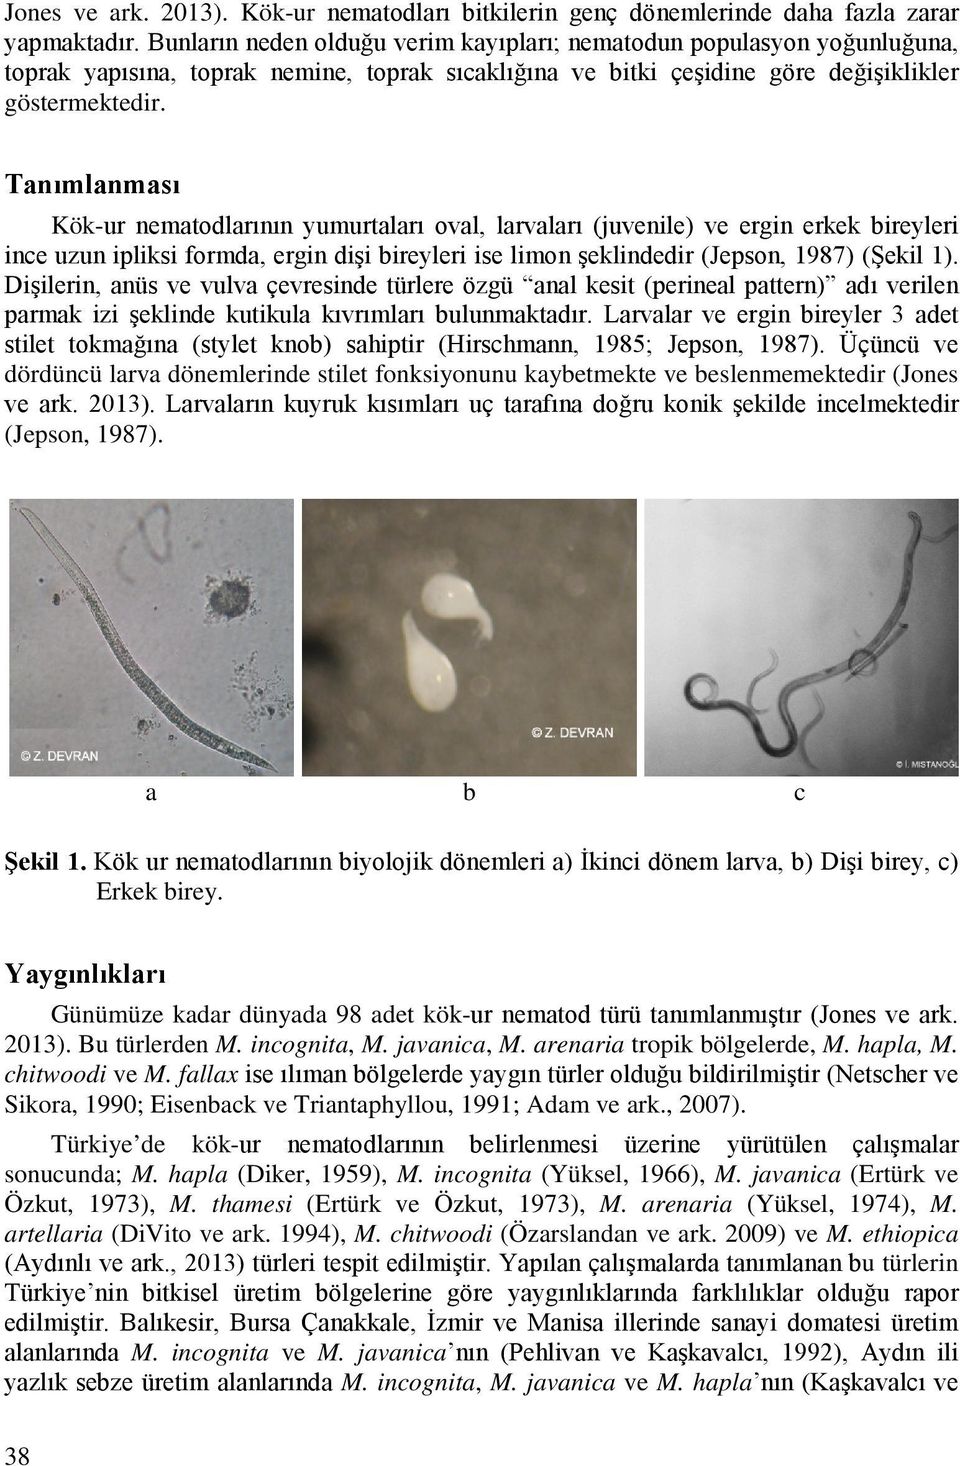 Tanımlanması Kök-ur nematodlarının yumurtaları oval, larvaları (juvenile) ve ergin erkek bireyleri ince uzun ipliksi formda, ergin dişi bireyleri ise limon şeklindedir (Jepson, 1987) (Şekil 1).